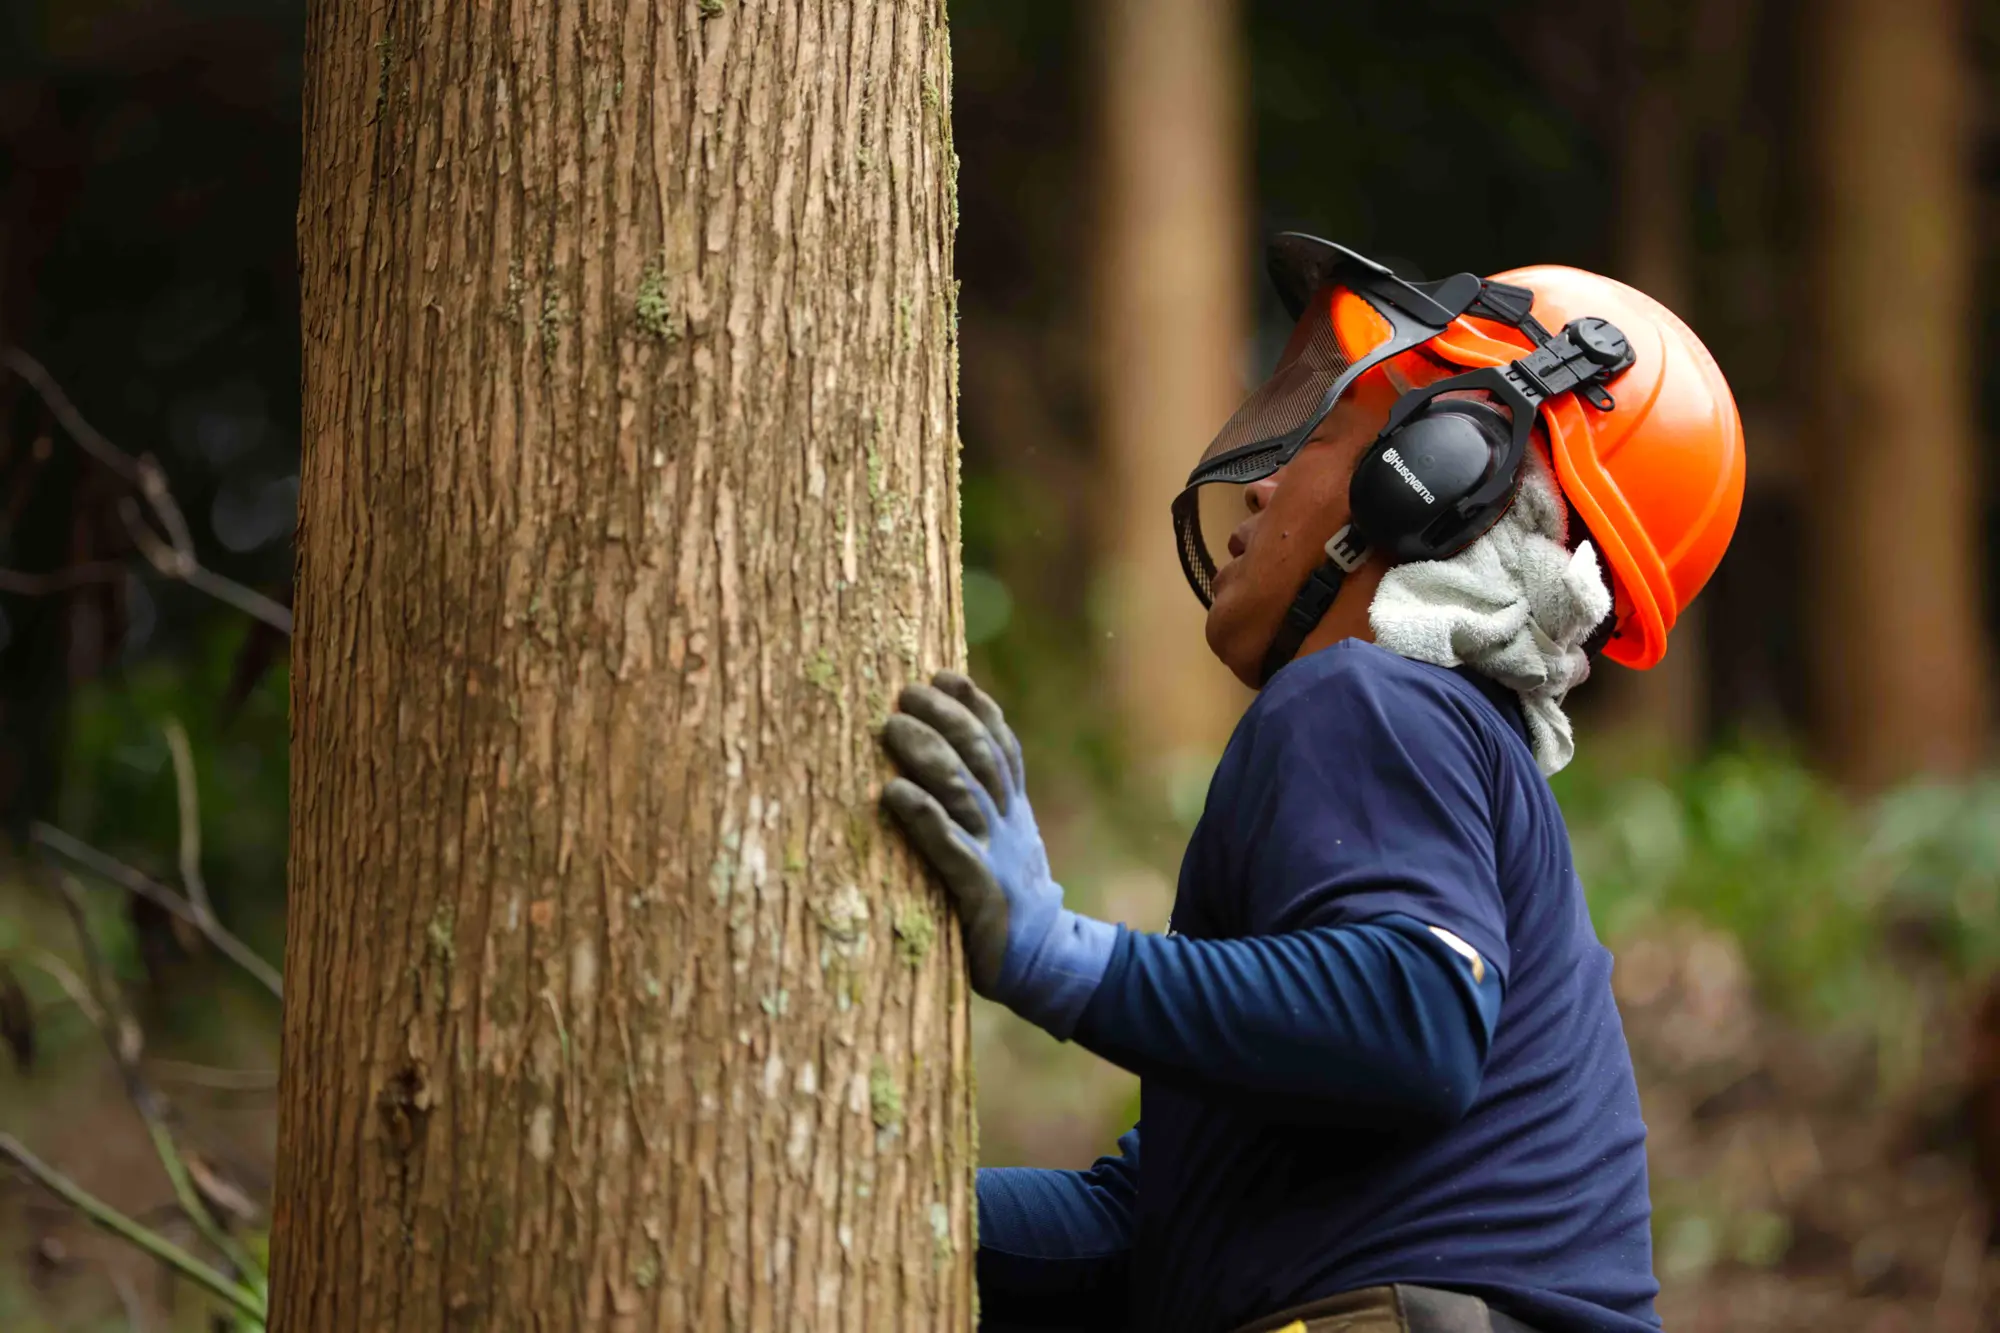 木の伐倒は一気に伐るのではなく、倒れる方向や角度を確認しながら慎重に進める。